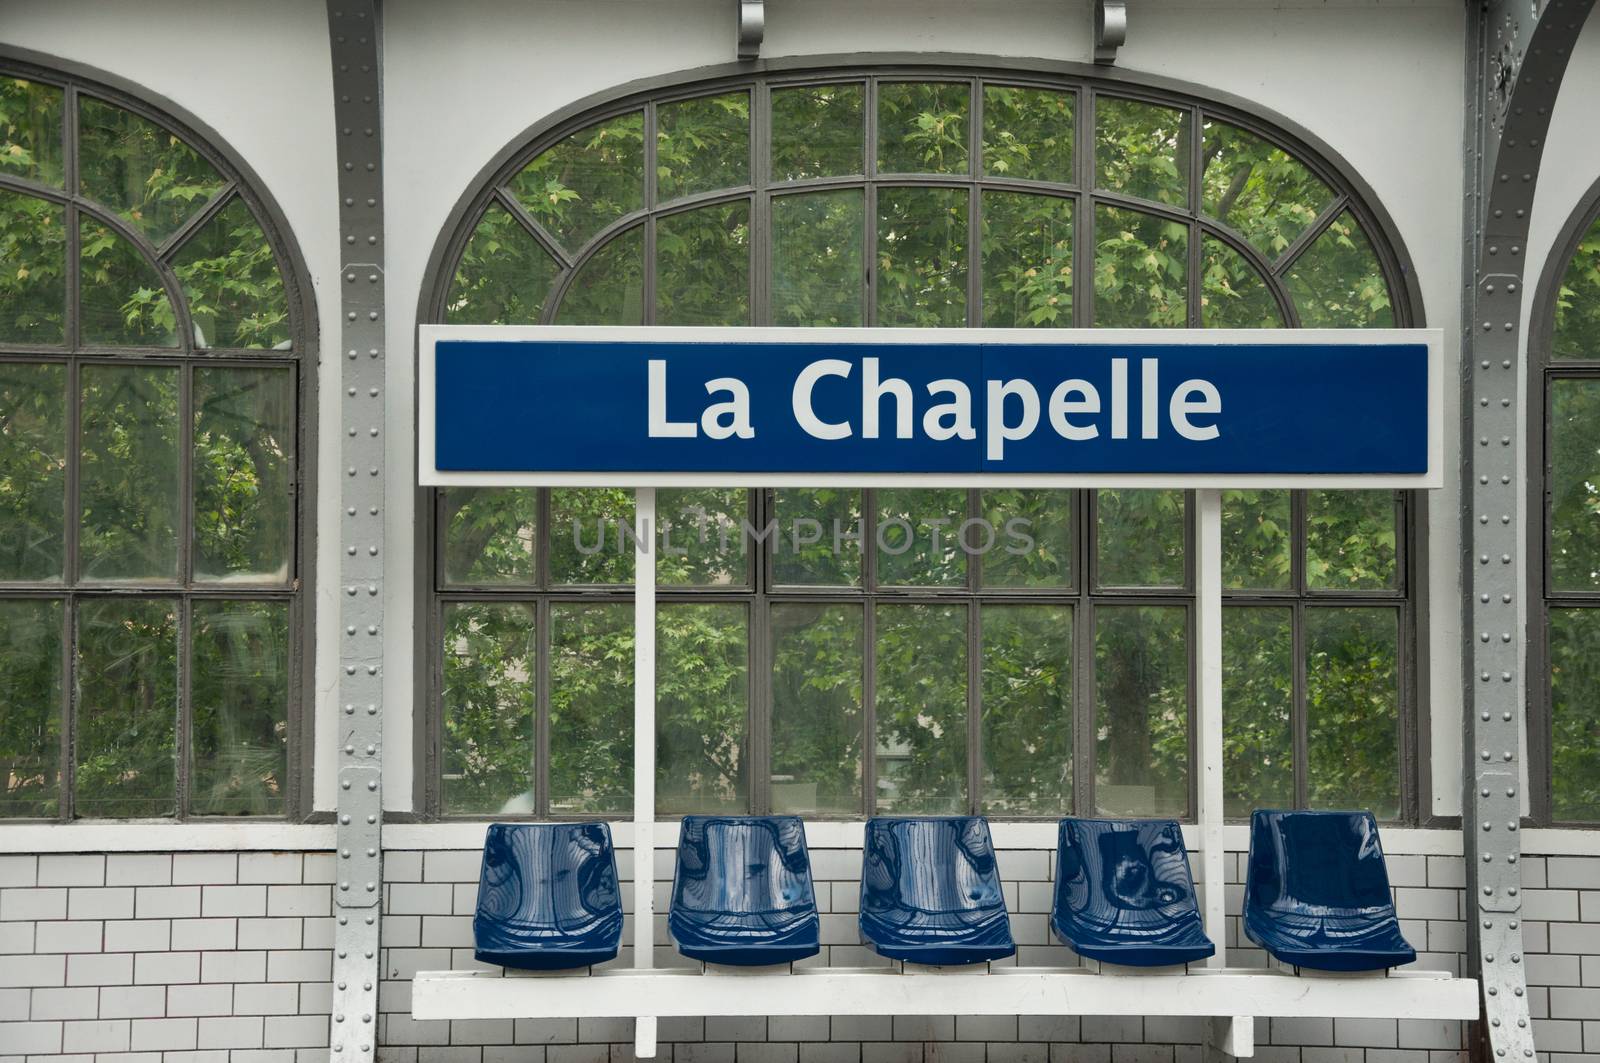 metropolitan station in Paris (La chapelle)